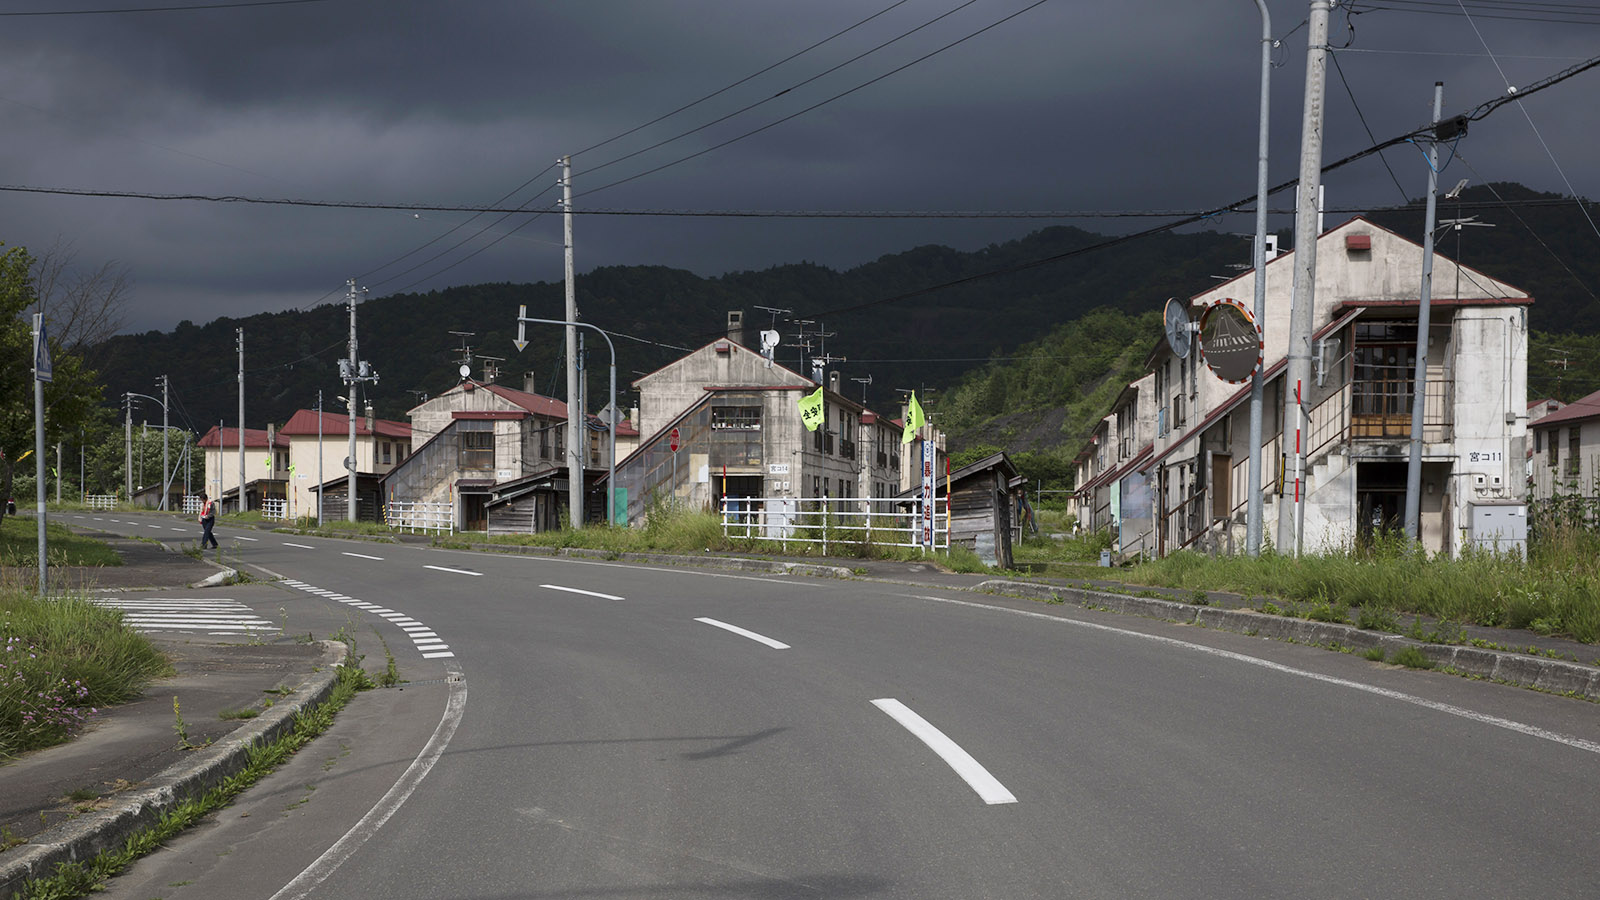 Призраки пустых домов: почему в Японии бесплатно раздают недвижимость и в чем подвох